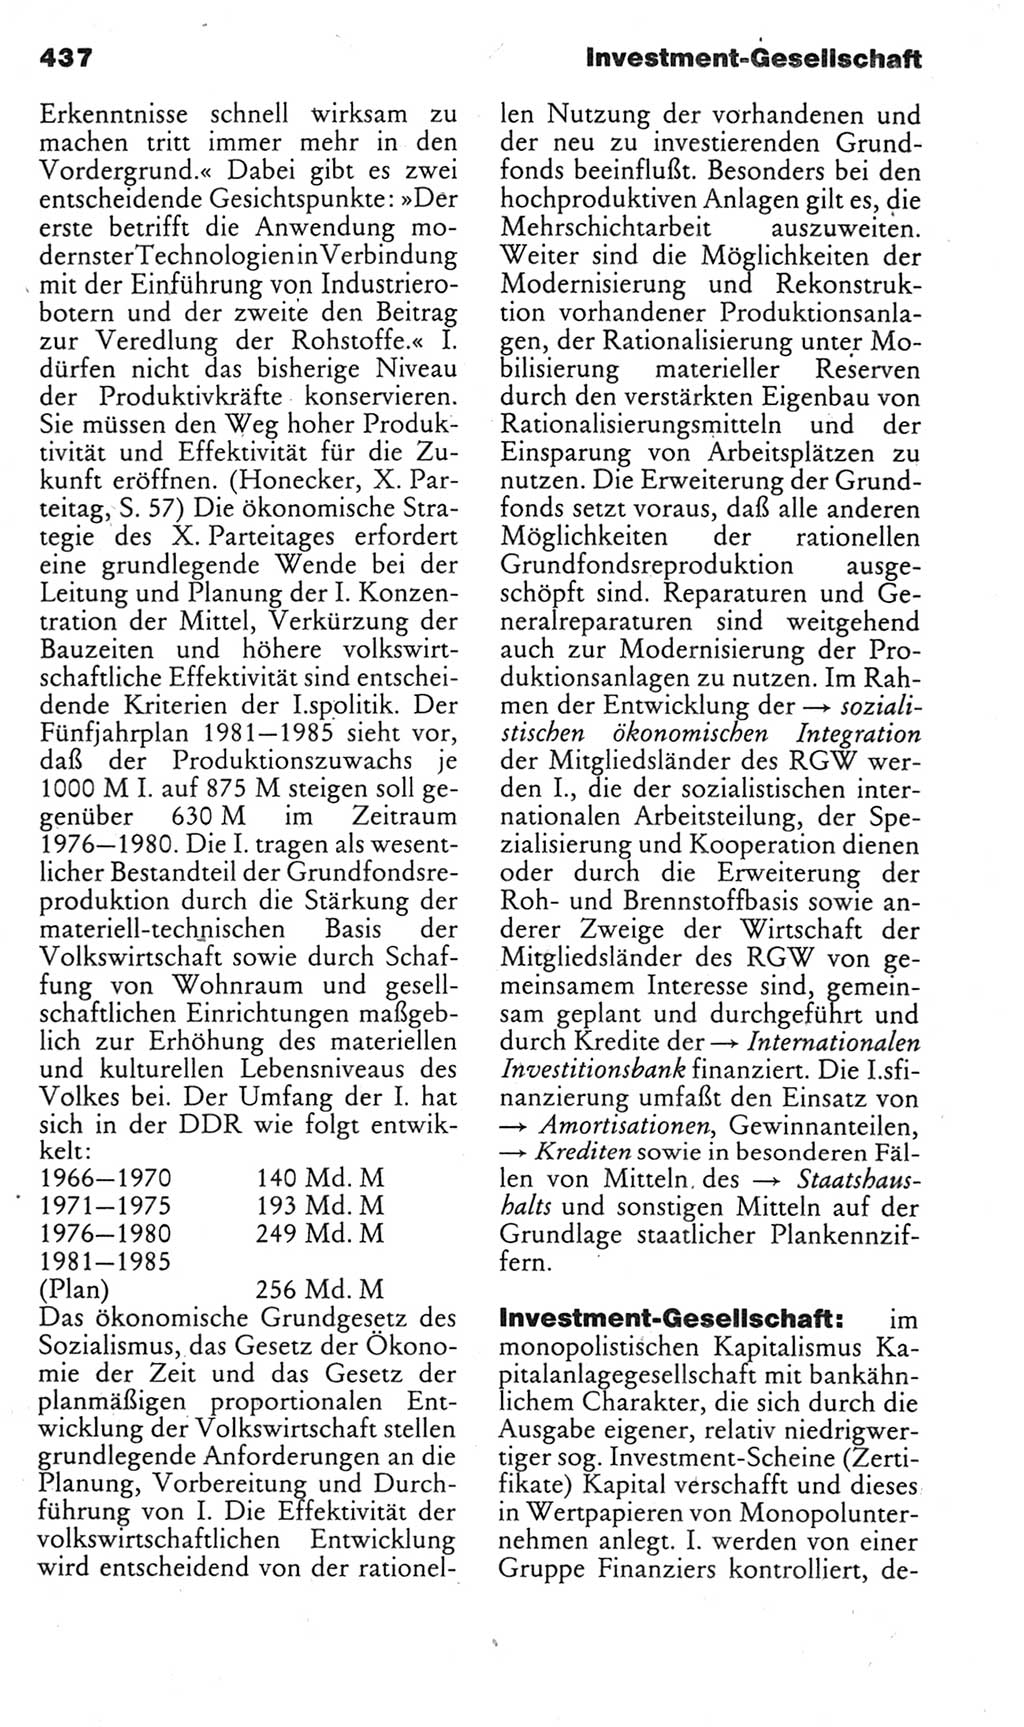 Kleines politisches Wörterbuch [Deutsche Demokratische Republik (DDR)] 1985, Seite 437 (Kl. pol. Wb. DDR 1985, S. 437)